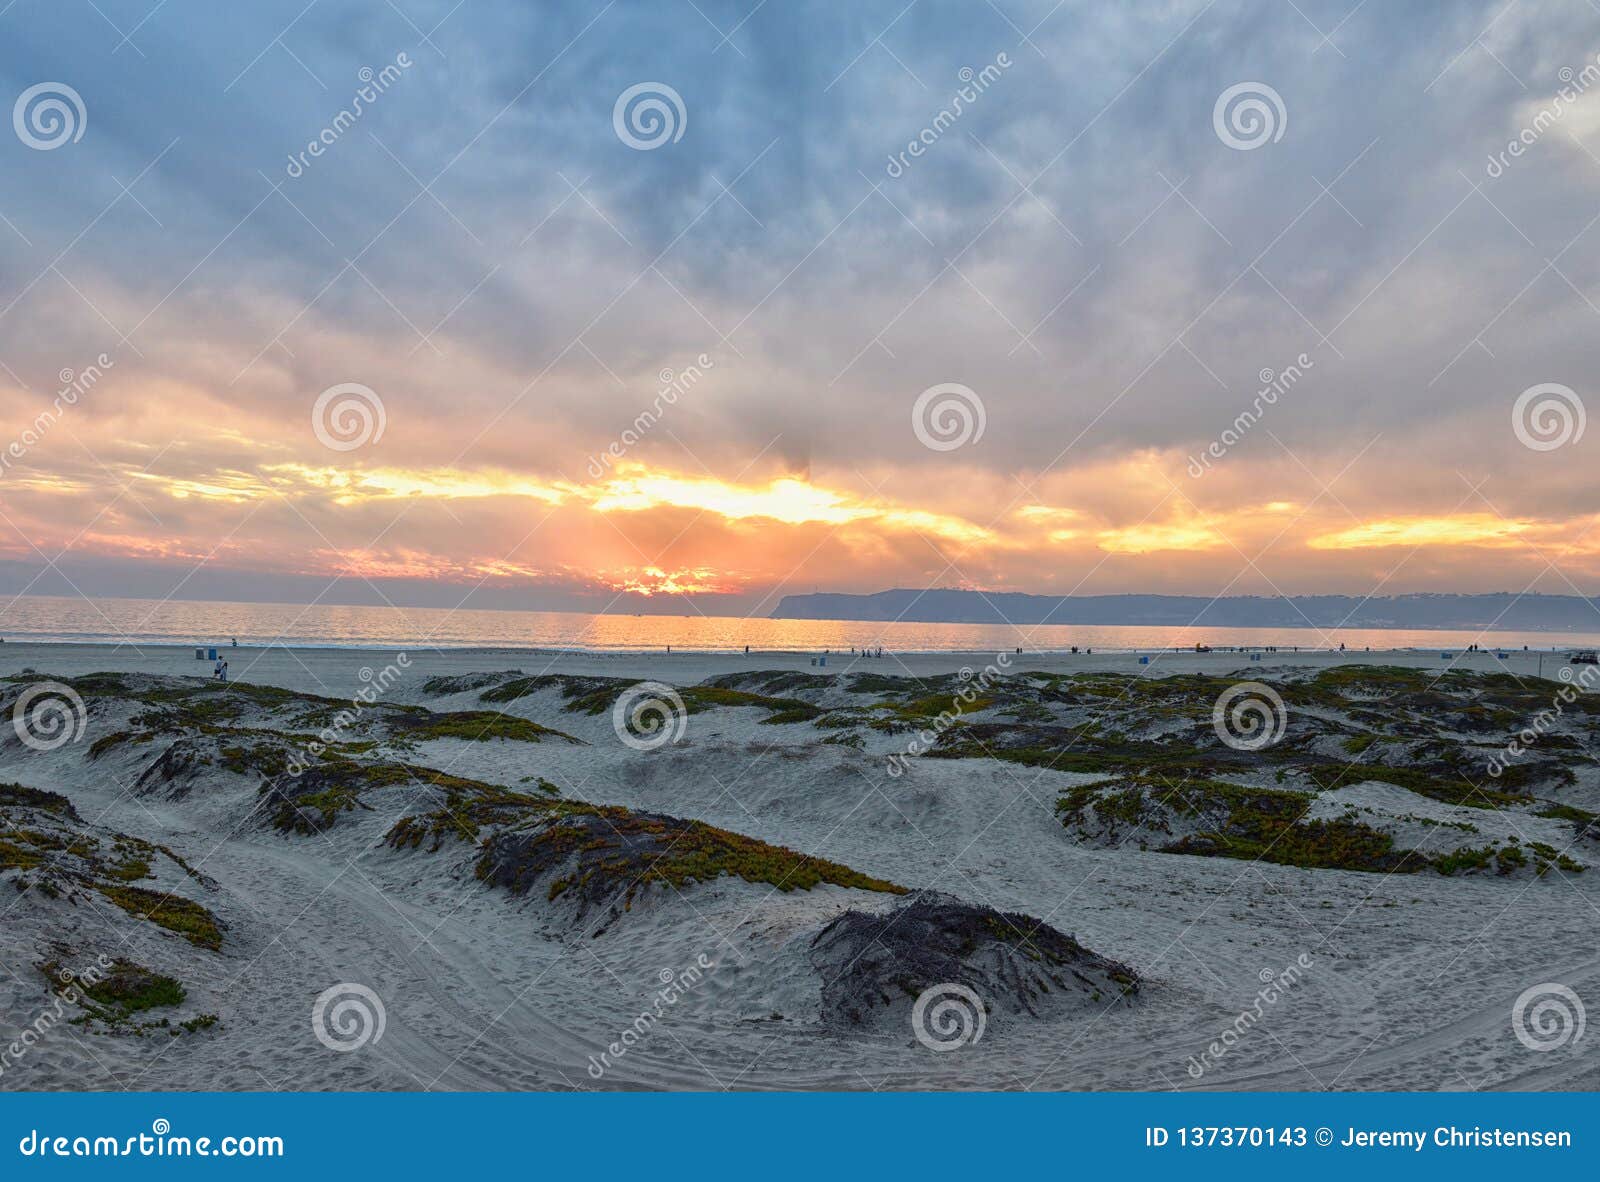 Plage de dunes avec coucher de soleil